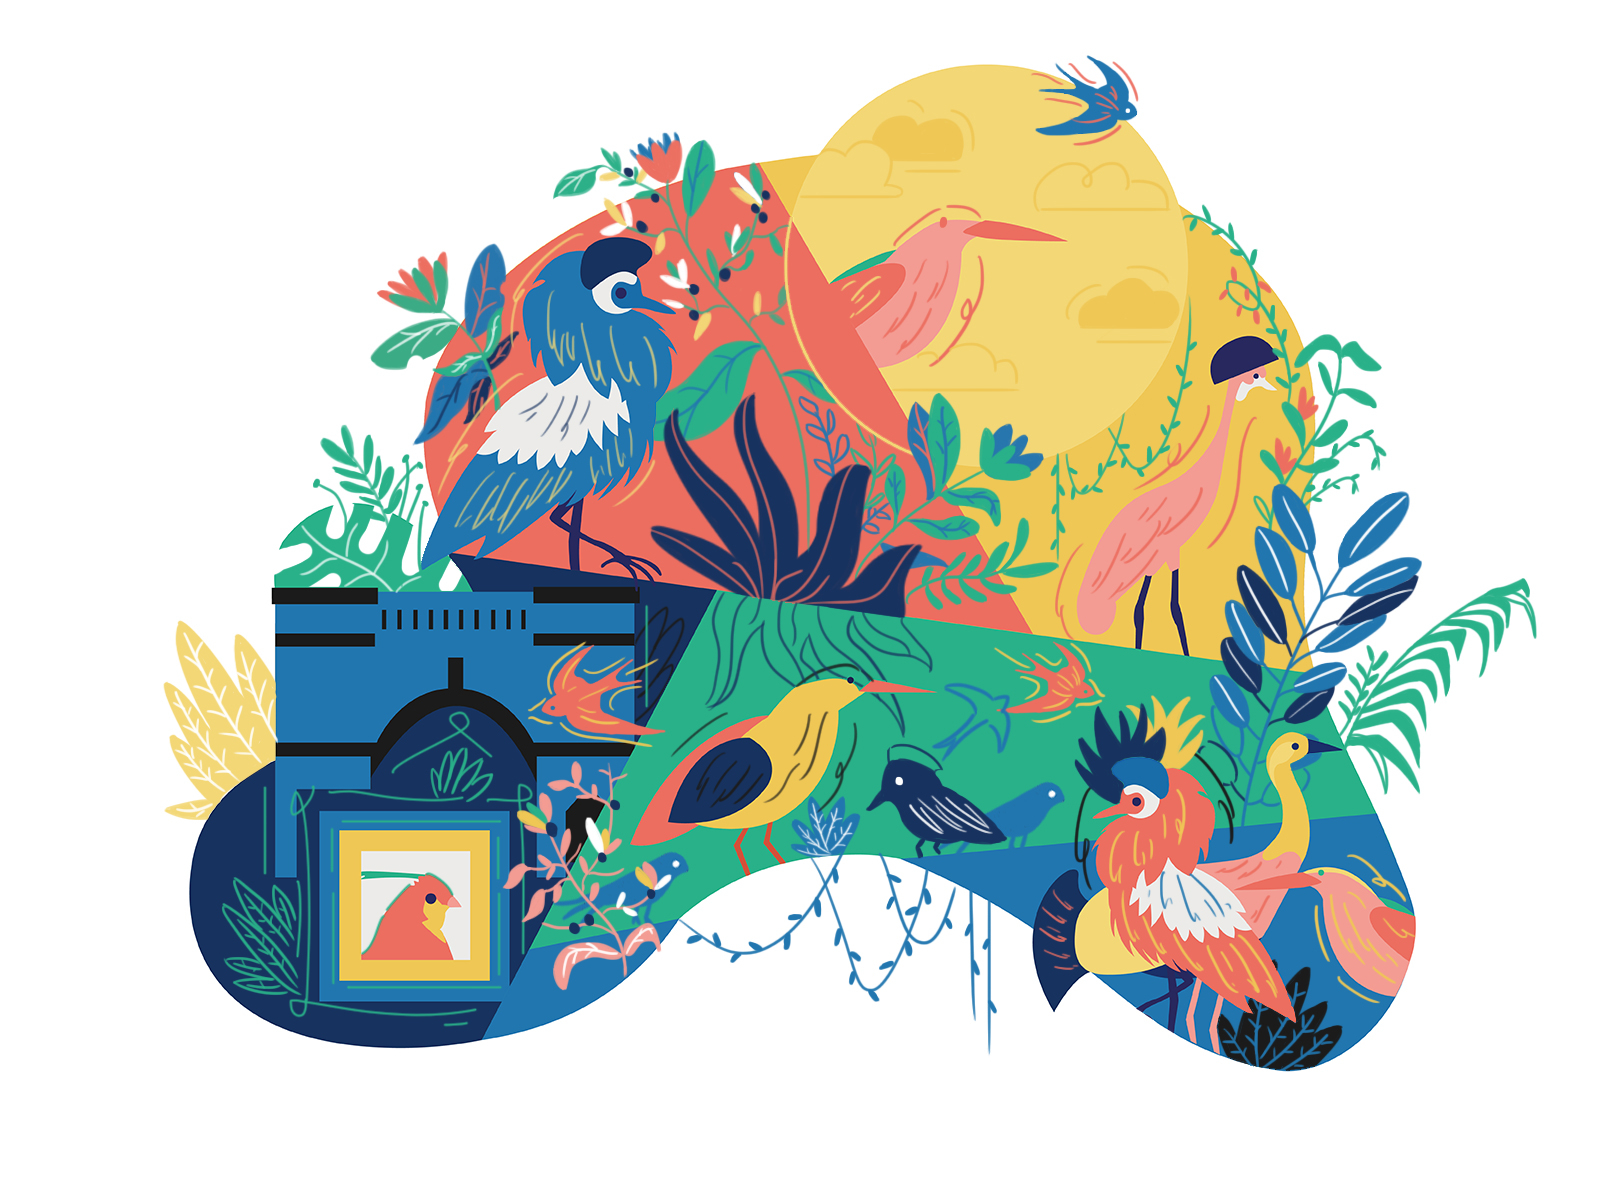 Hundred birds flower Illustration by TeapoT on Dribbble